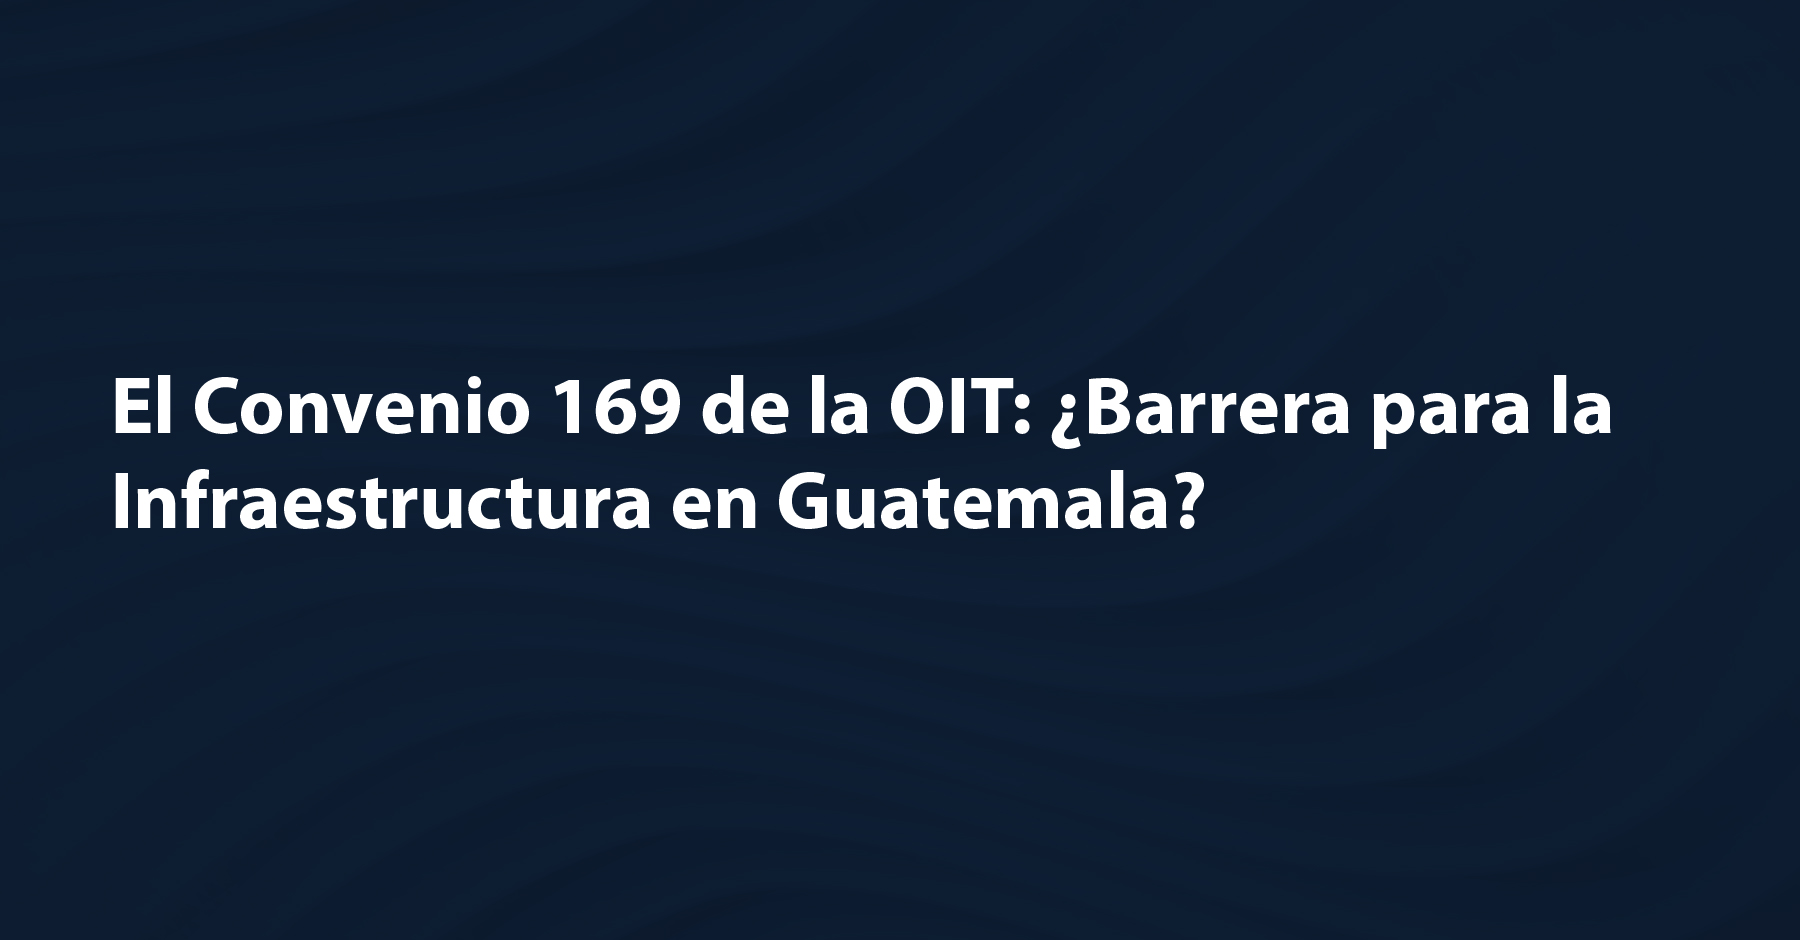 El Convenio 169 de la OIT: ¿Barrera para la Infraestructura en Guatemala?